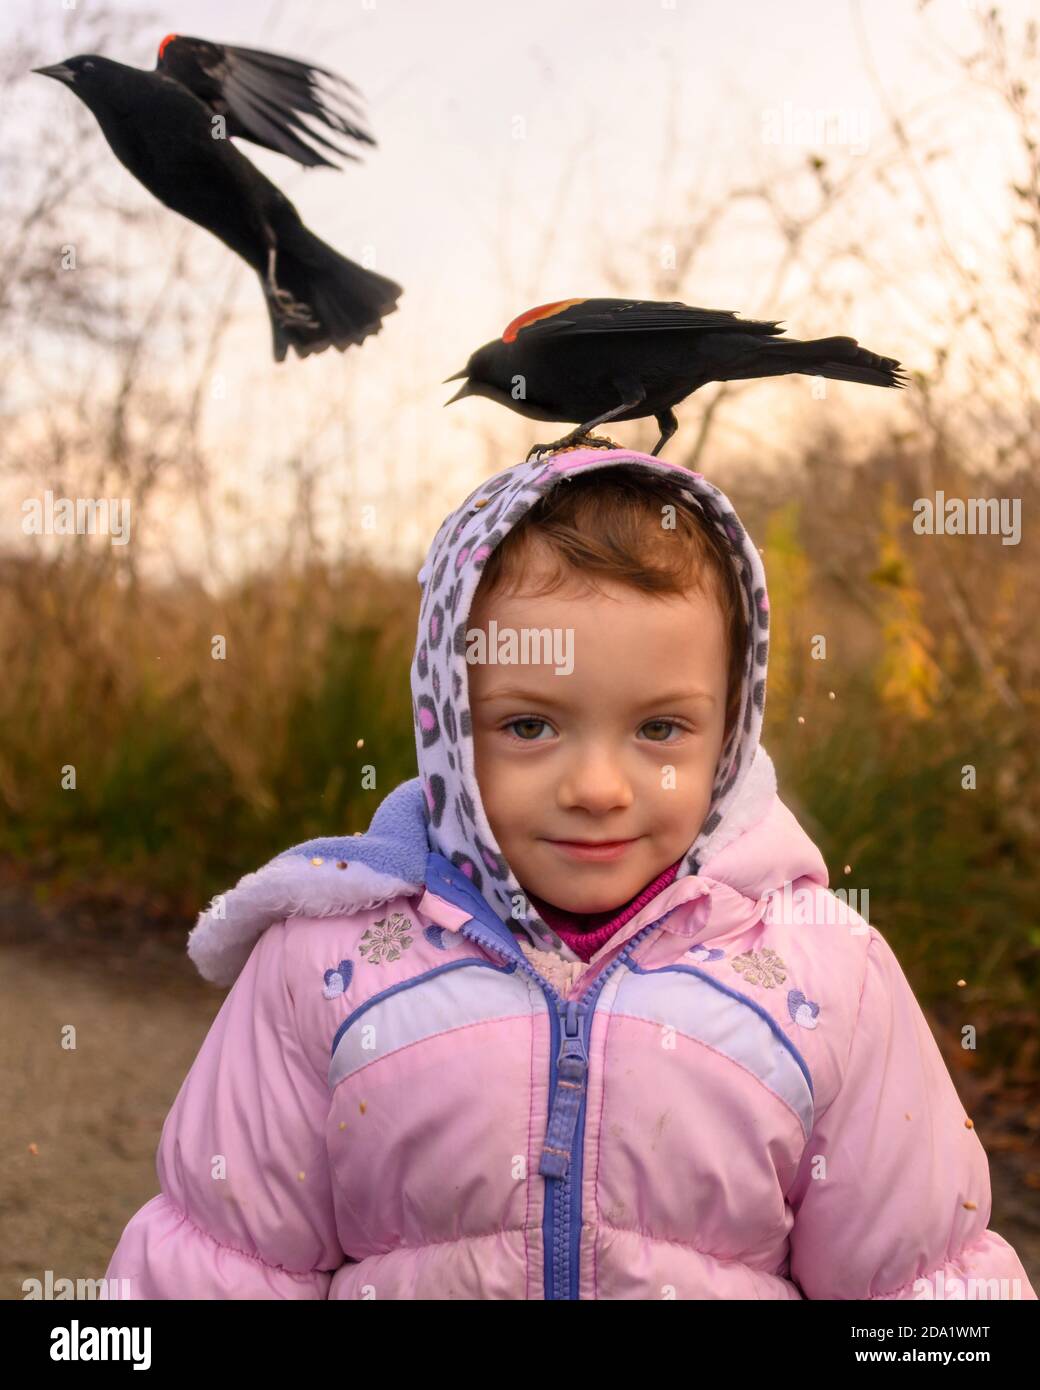 de 2 años fuera en otoño. El pájaro negro de alas rojas está parado en la cabeza de la niña, comiendo semillas. El niño tiene chaqueta invierno y